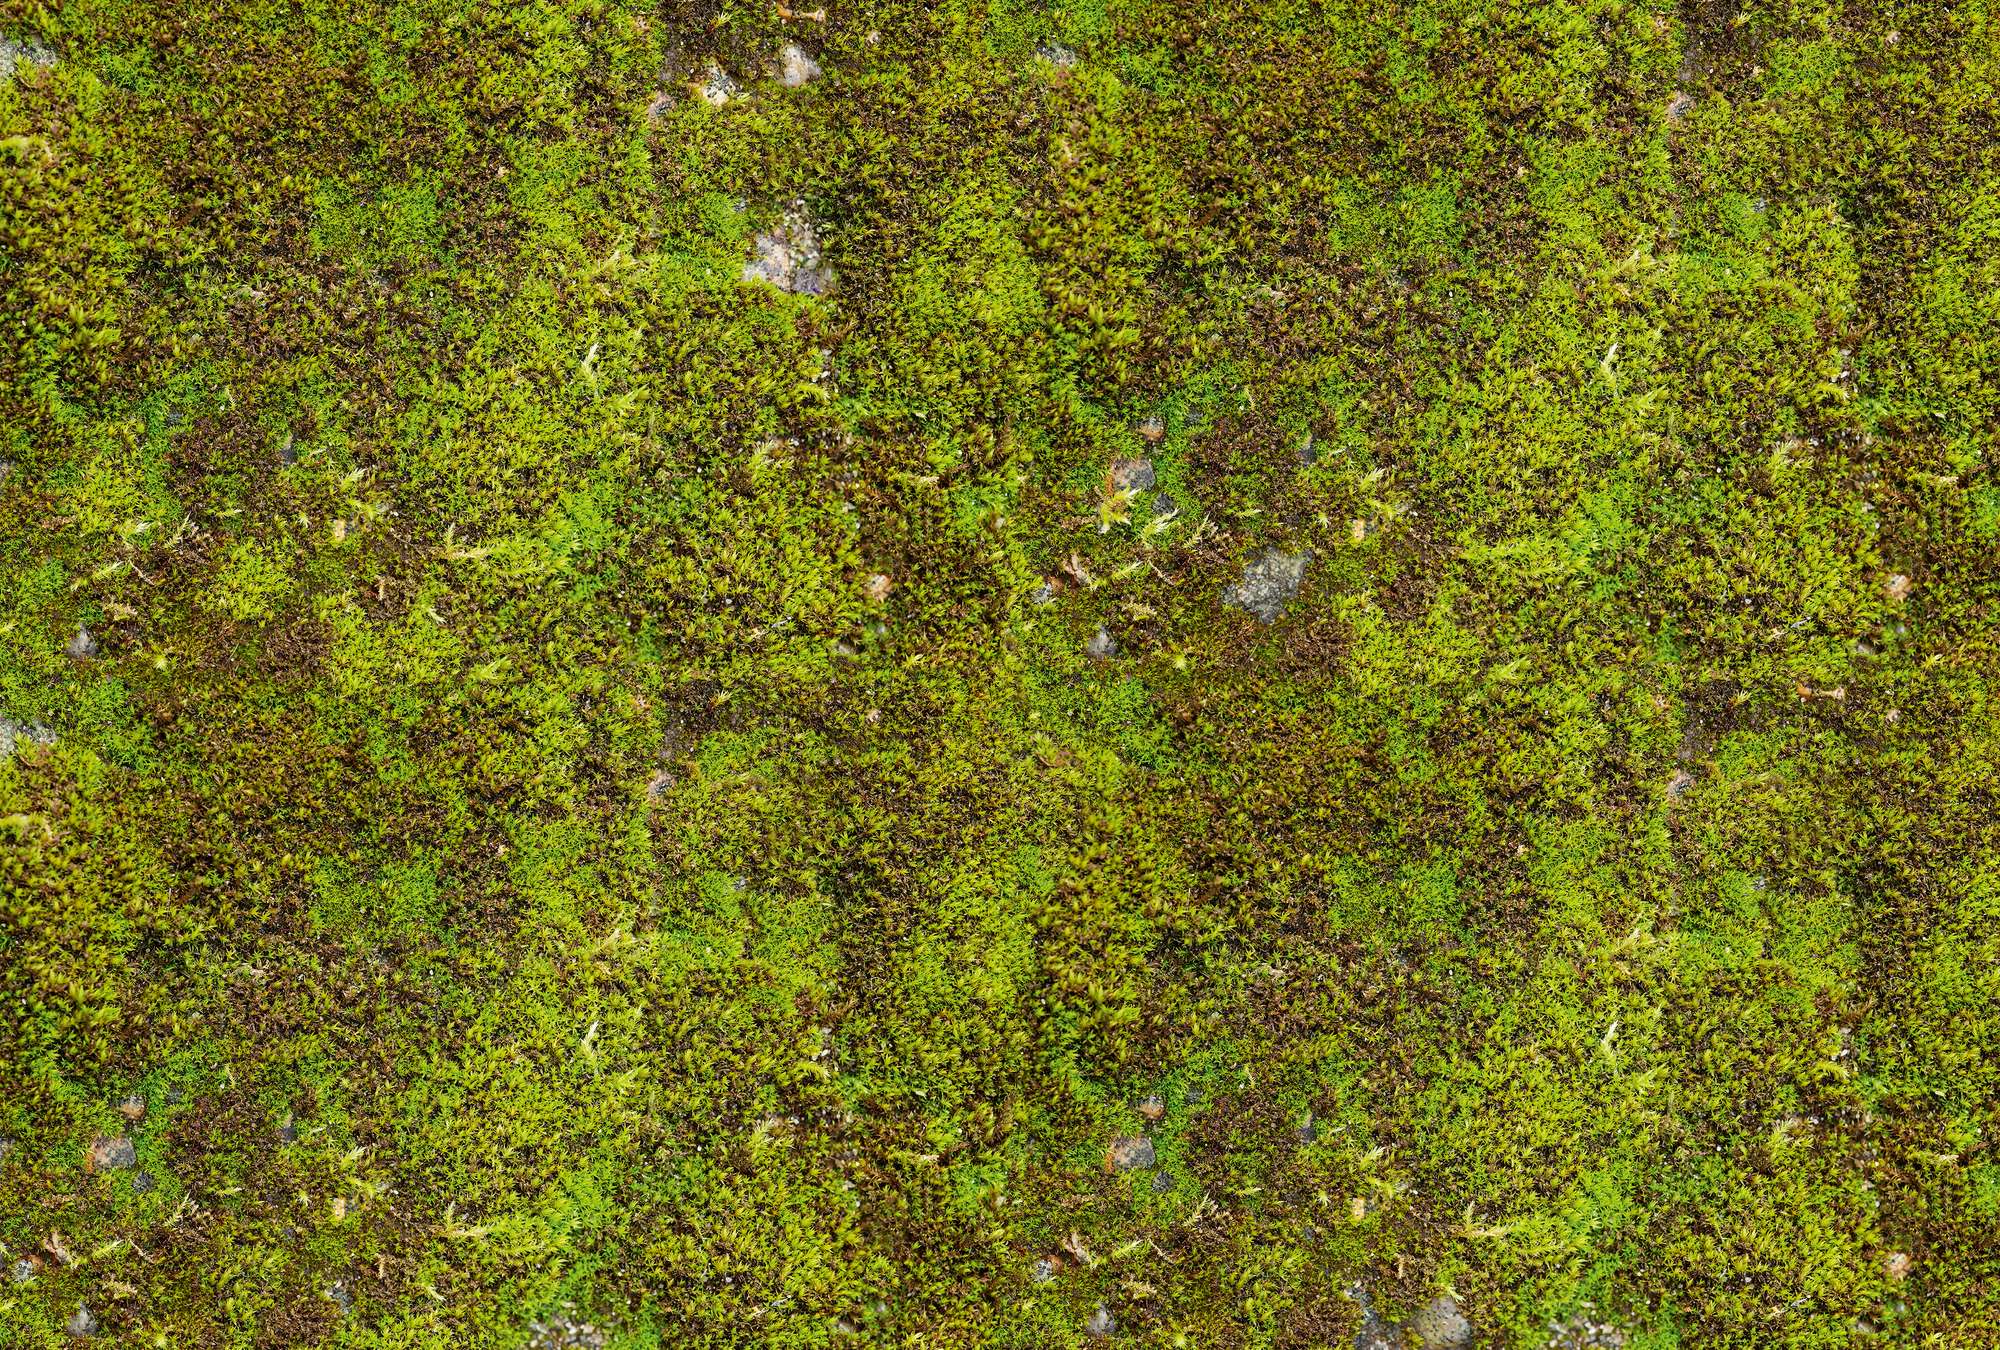             Nature calming effect mural - moss surface
        